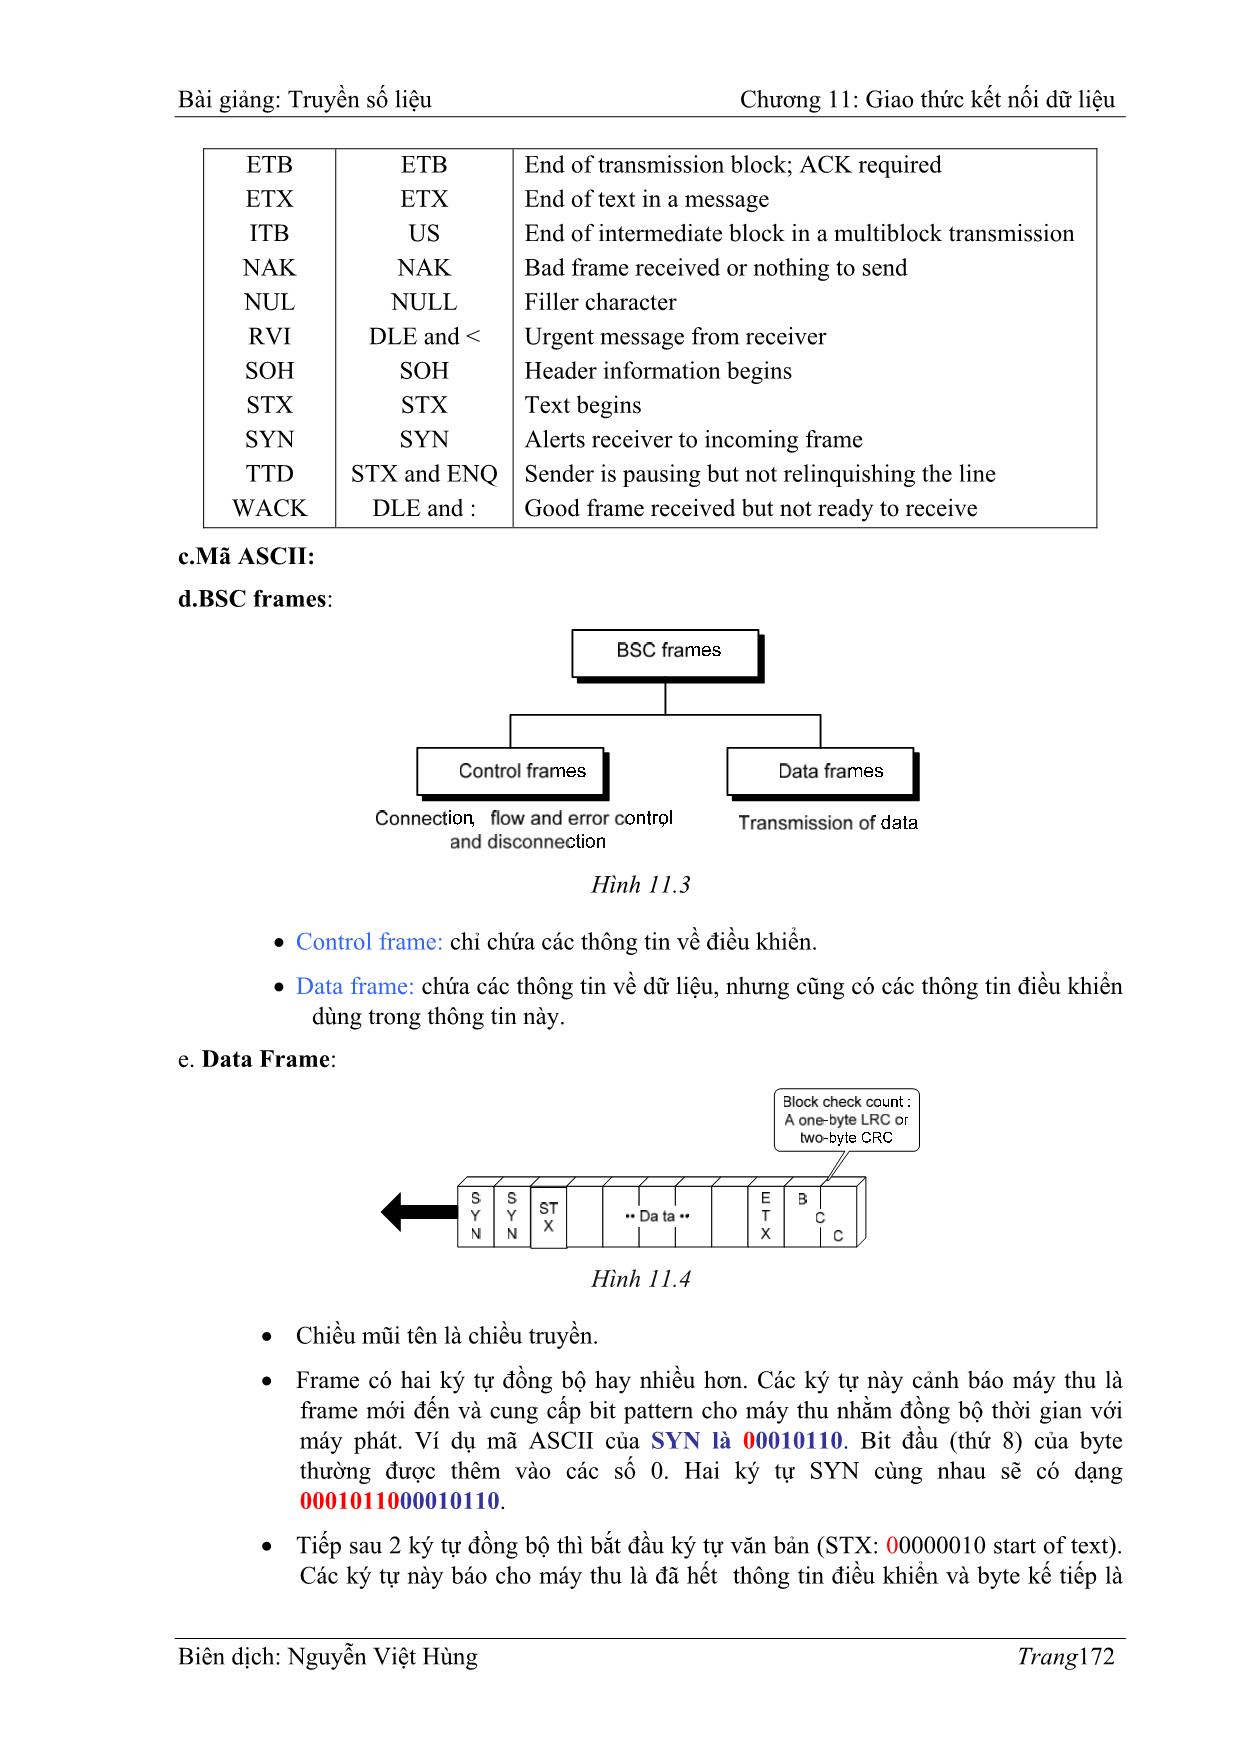 Bài giảng Truyền số liệu - Chương 11: Giao thức kết nối dữ liệu (Data link protocols) - Nguyễn Việt Hùng trang 4